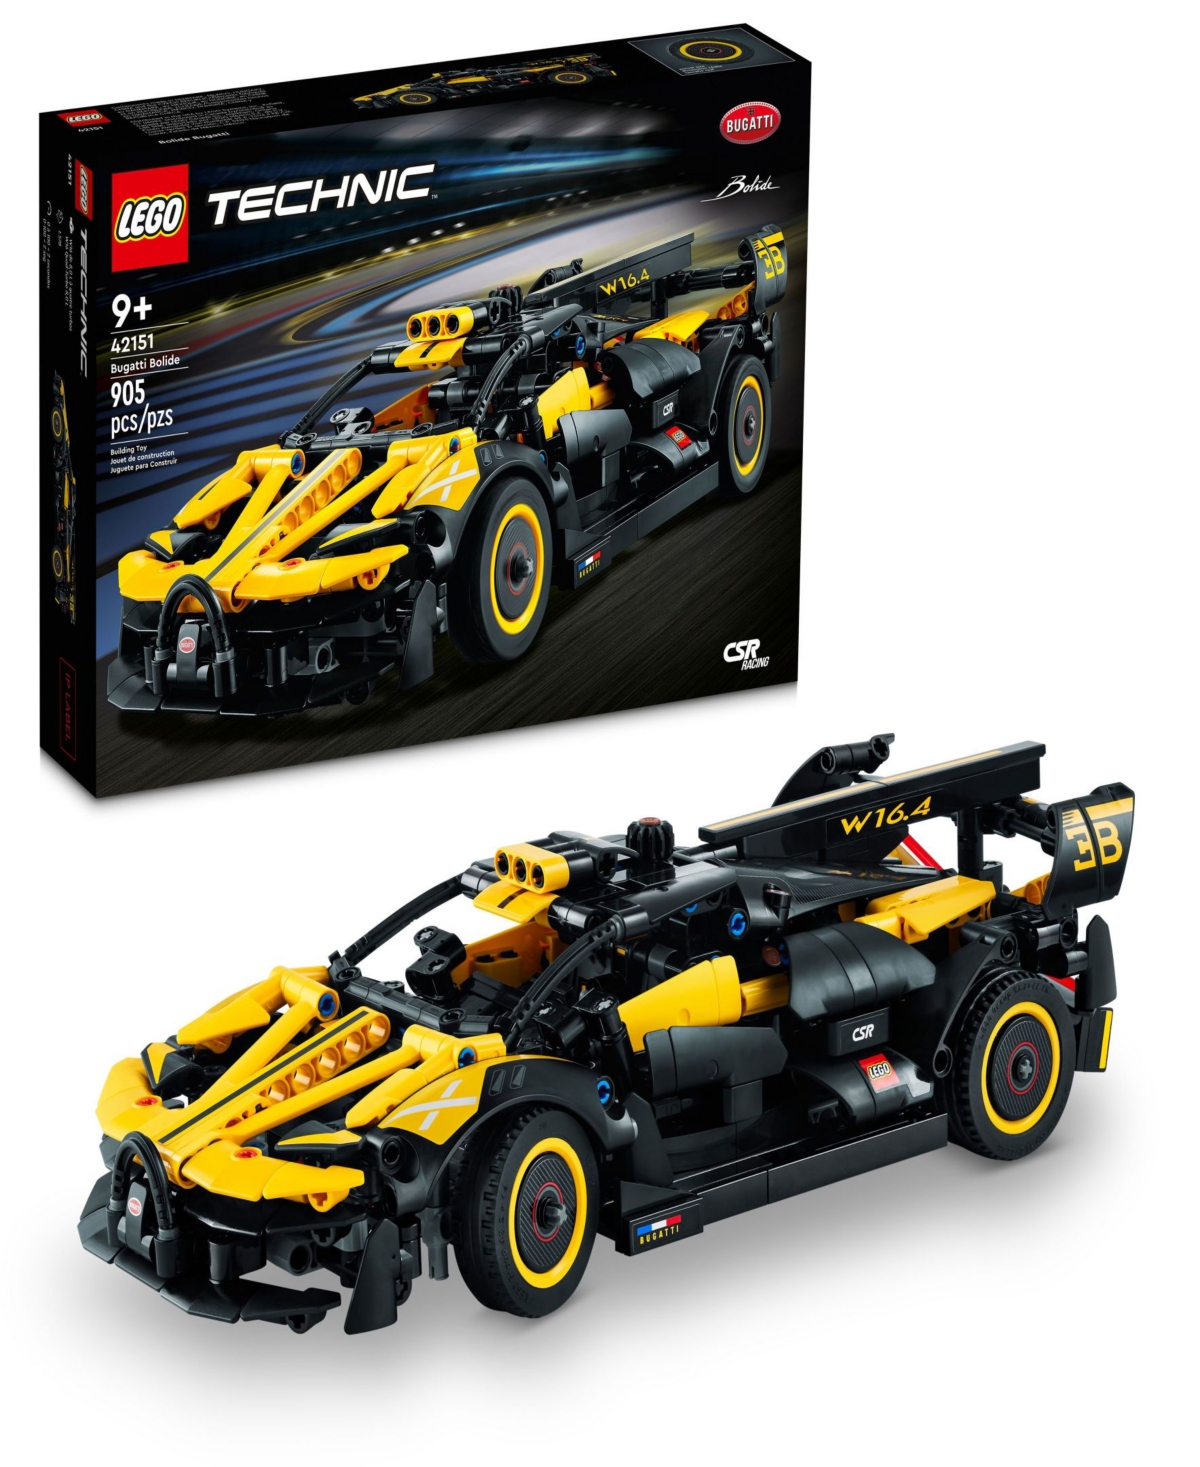 Lego Technic Bugatti Bolide 42151 Toy Model Car Building Set In Multicolor